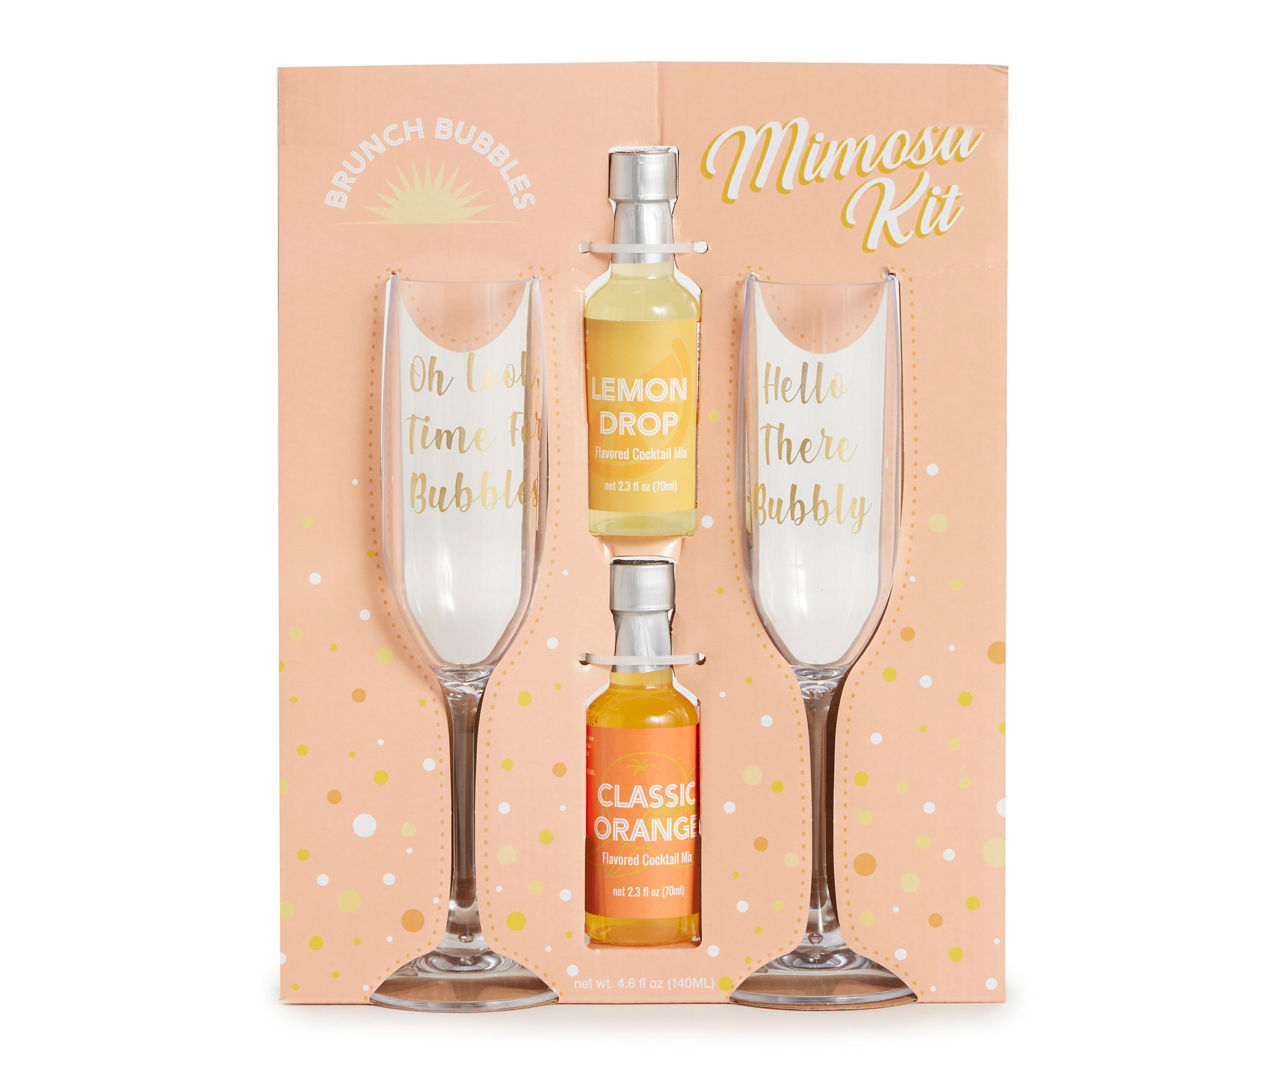 Mimosa Mixer w/ Tangerine & Mango, 16 fl oz – Iconic Style + Home